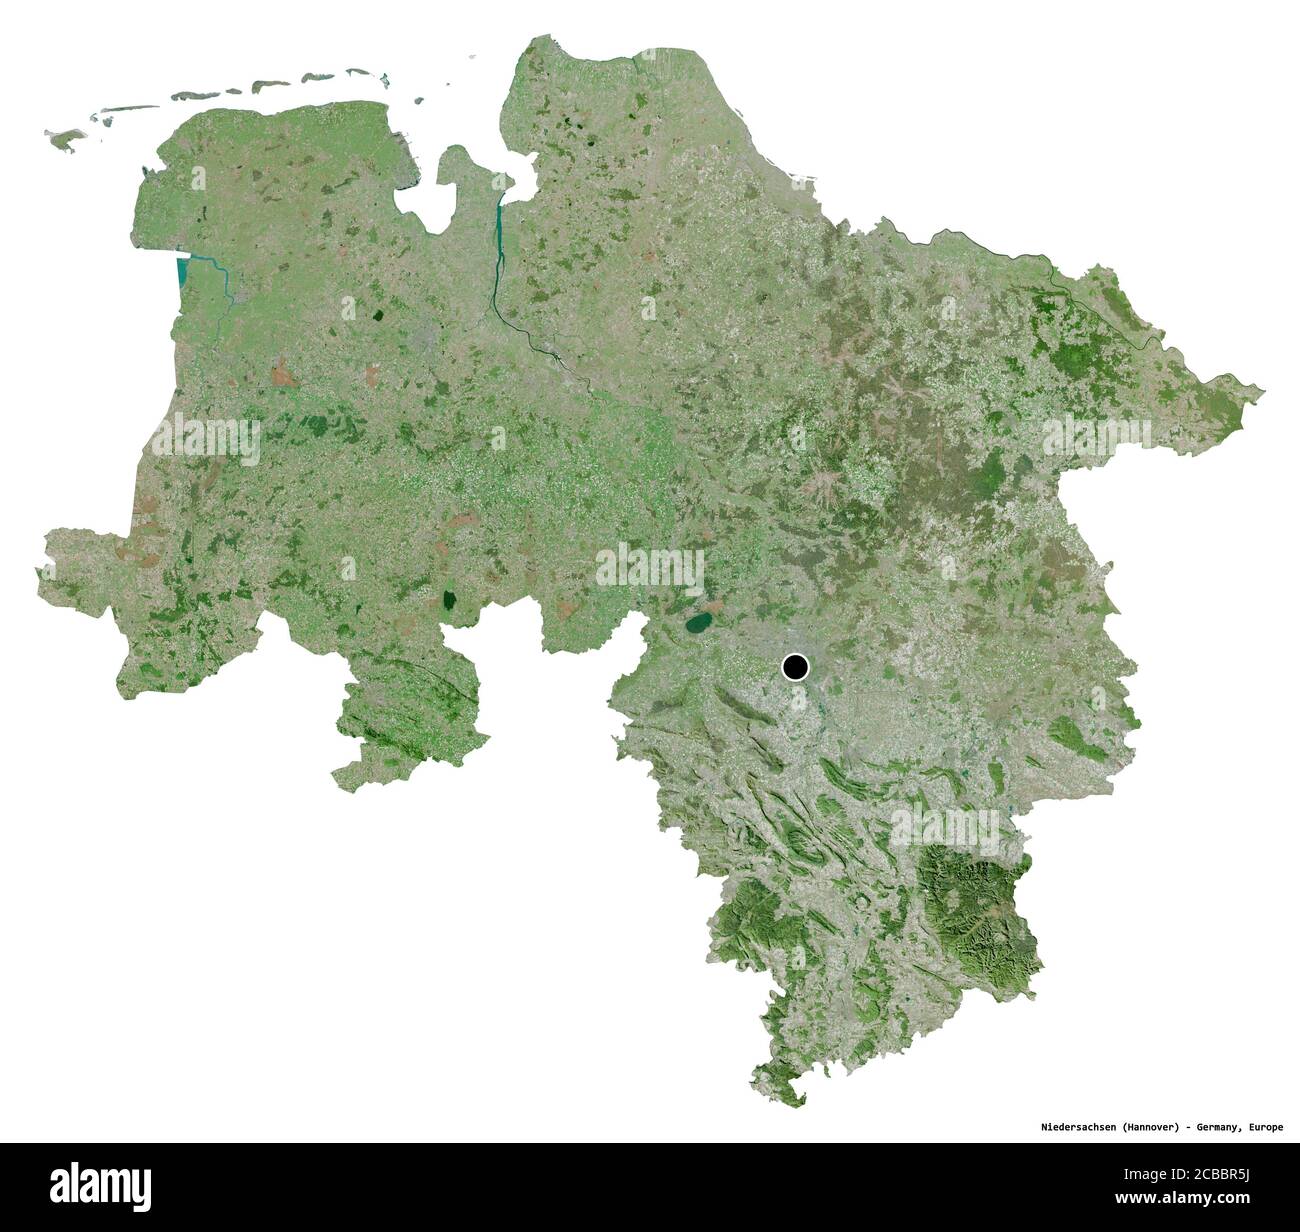 Forme de Niedersachsen, Etat d'Allemagne, avec sa capitale isolée sur fond blanc. Imagerie satellite. Rendu 3D Banque D'Images